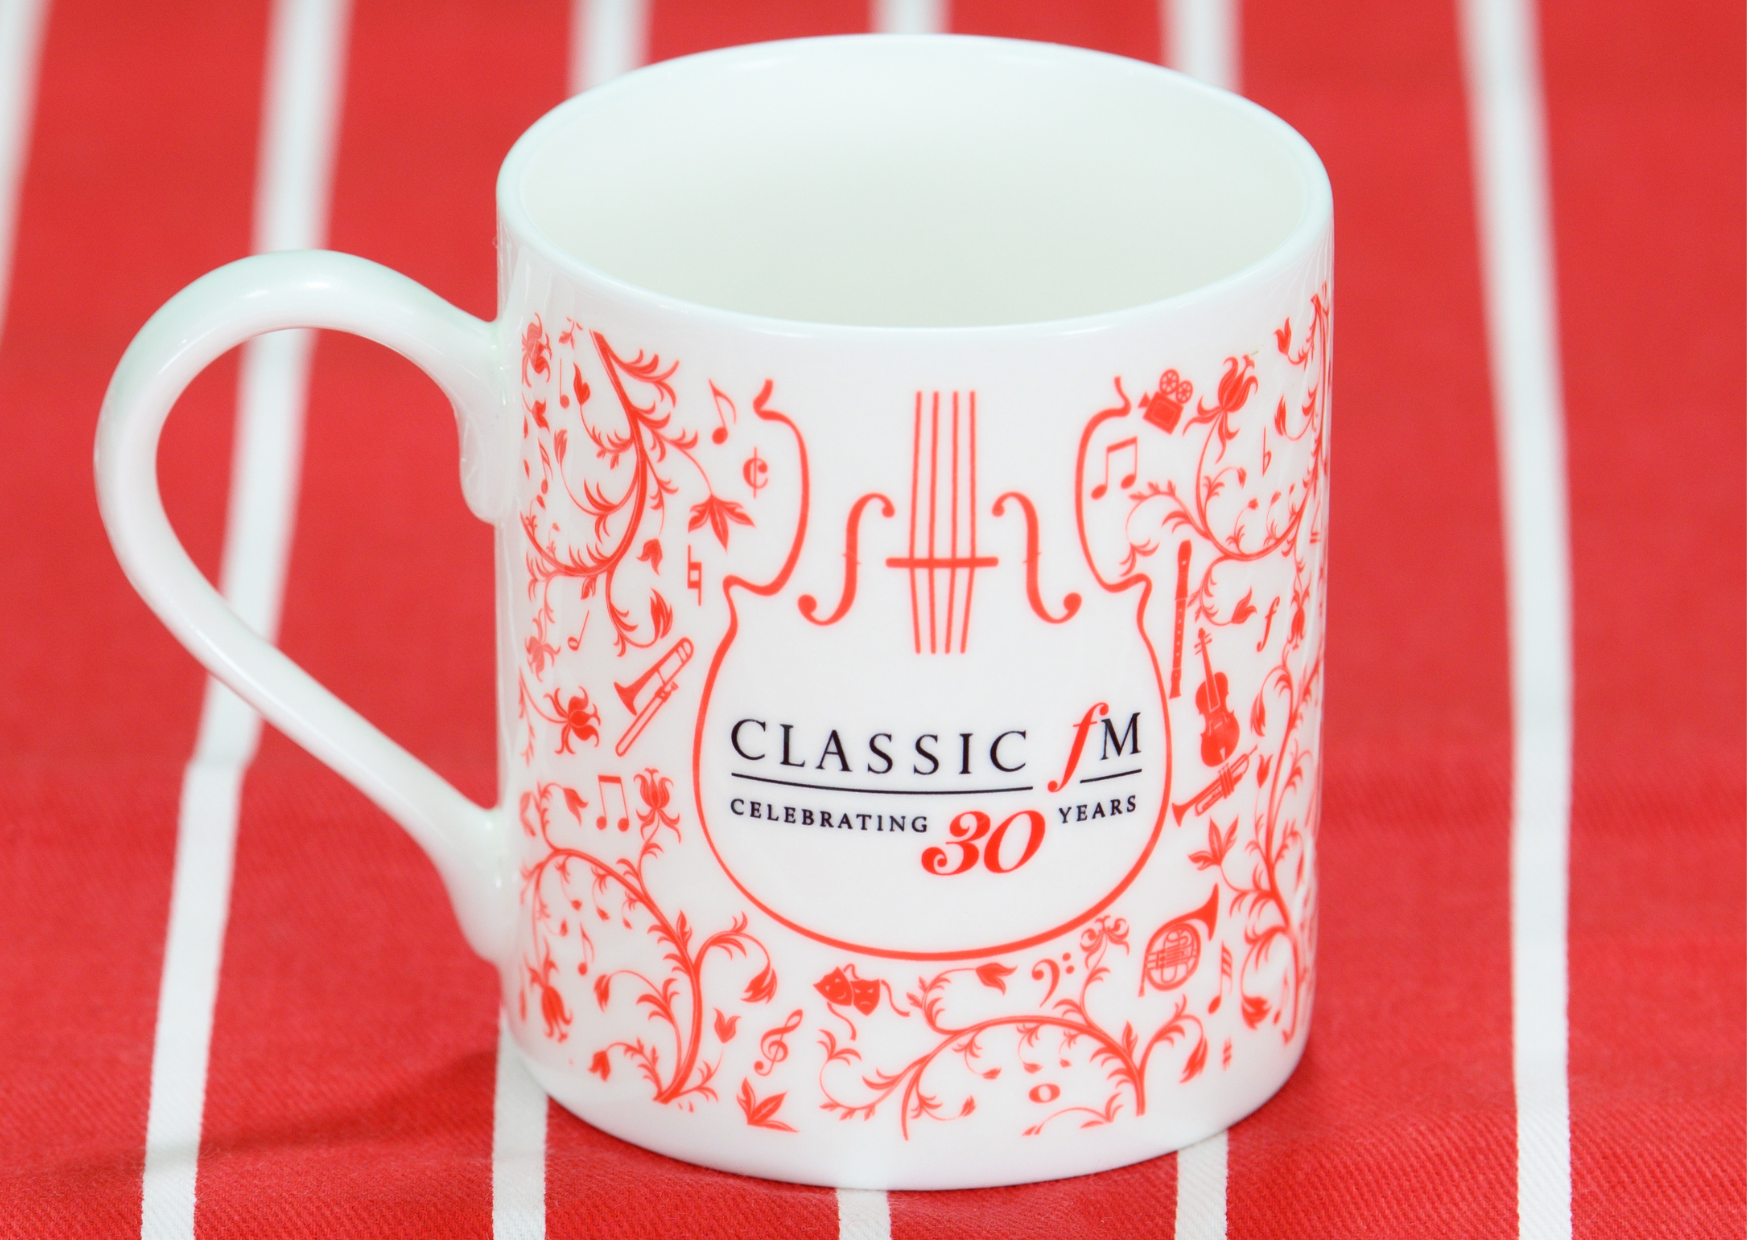 Shop Classic FM's limited edition 30th birthday mug